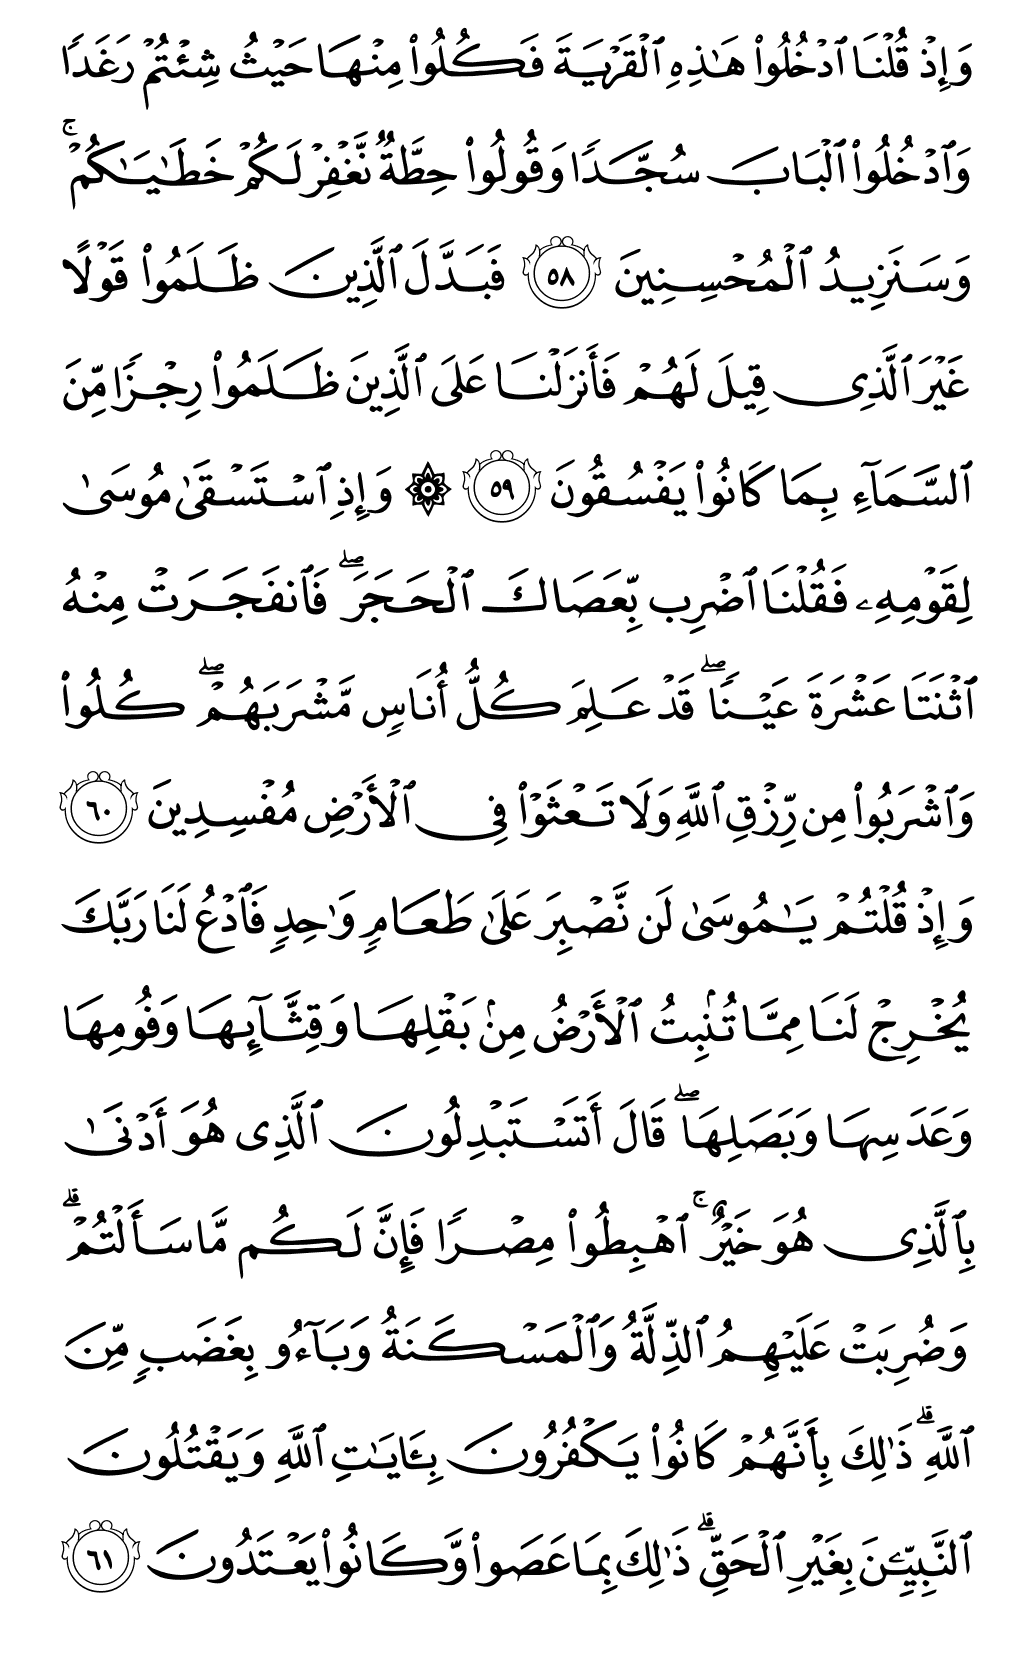 الصفحة رقم 9 من القرآن الكريم